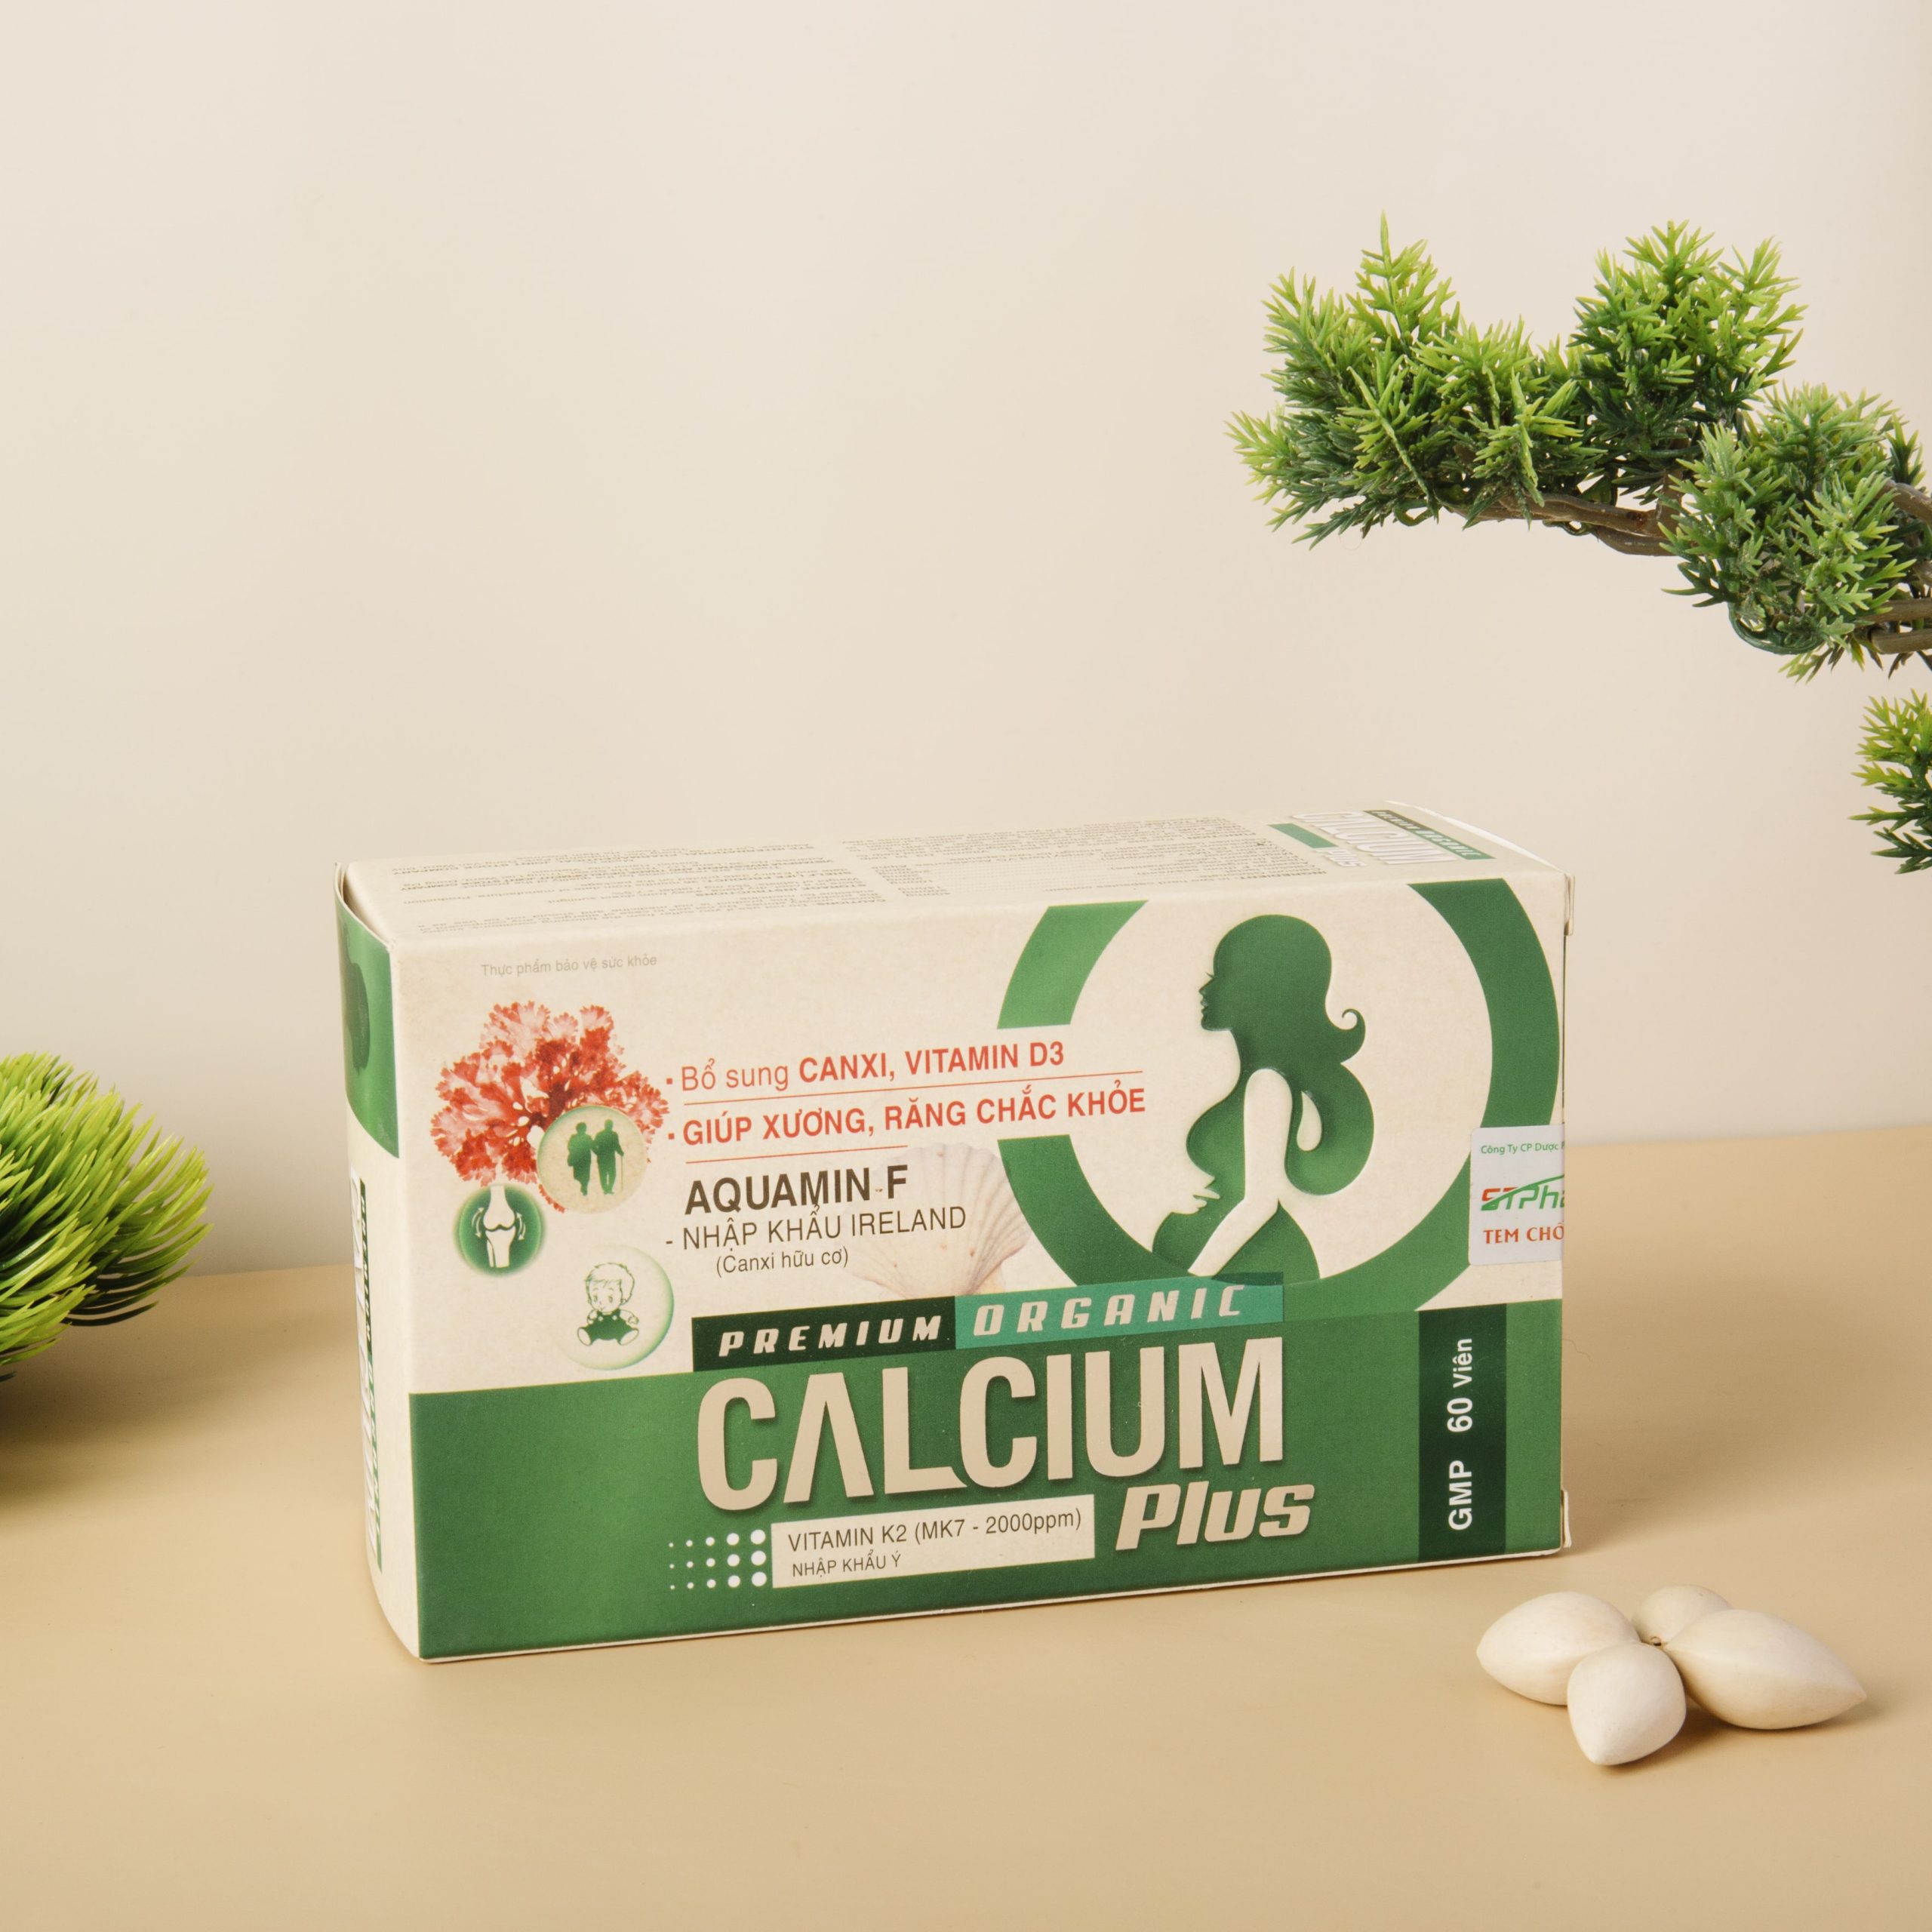 Calcium Plus sẽ giúp bạn bù đắp chính xác và nhanh chóng lượng canxi bị thiếu hụt khi ăn chay